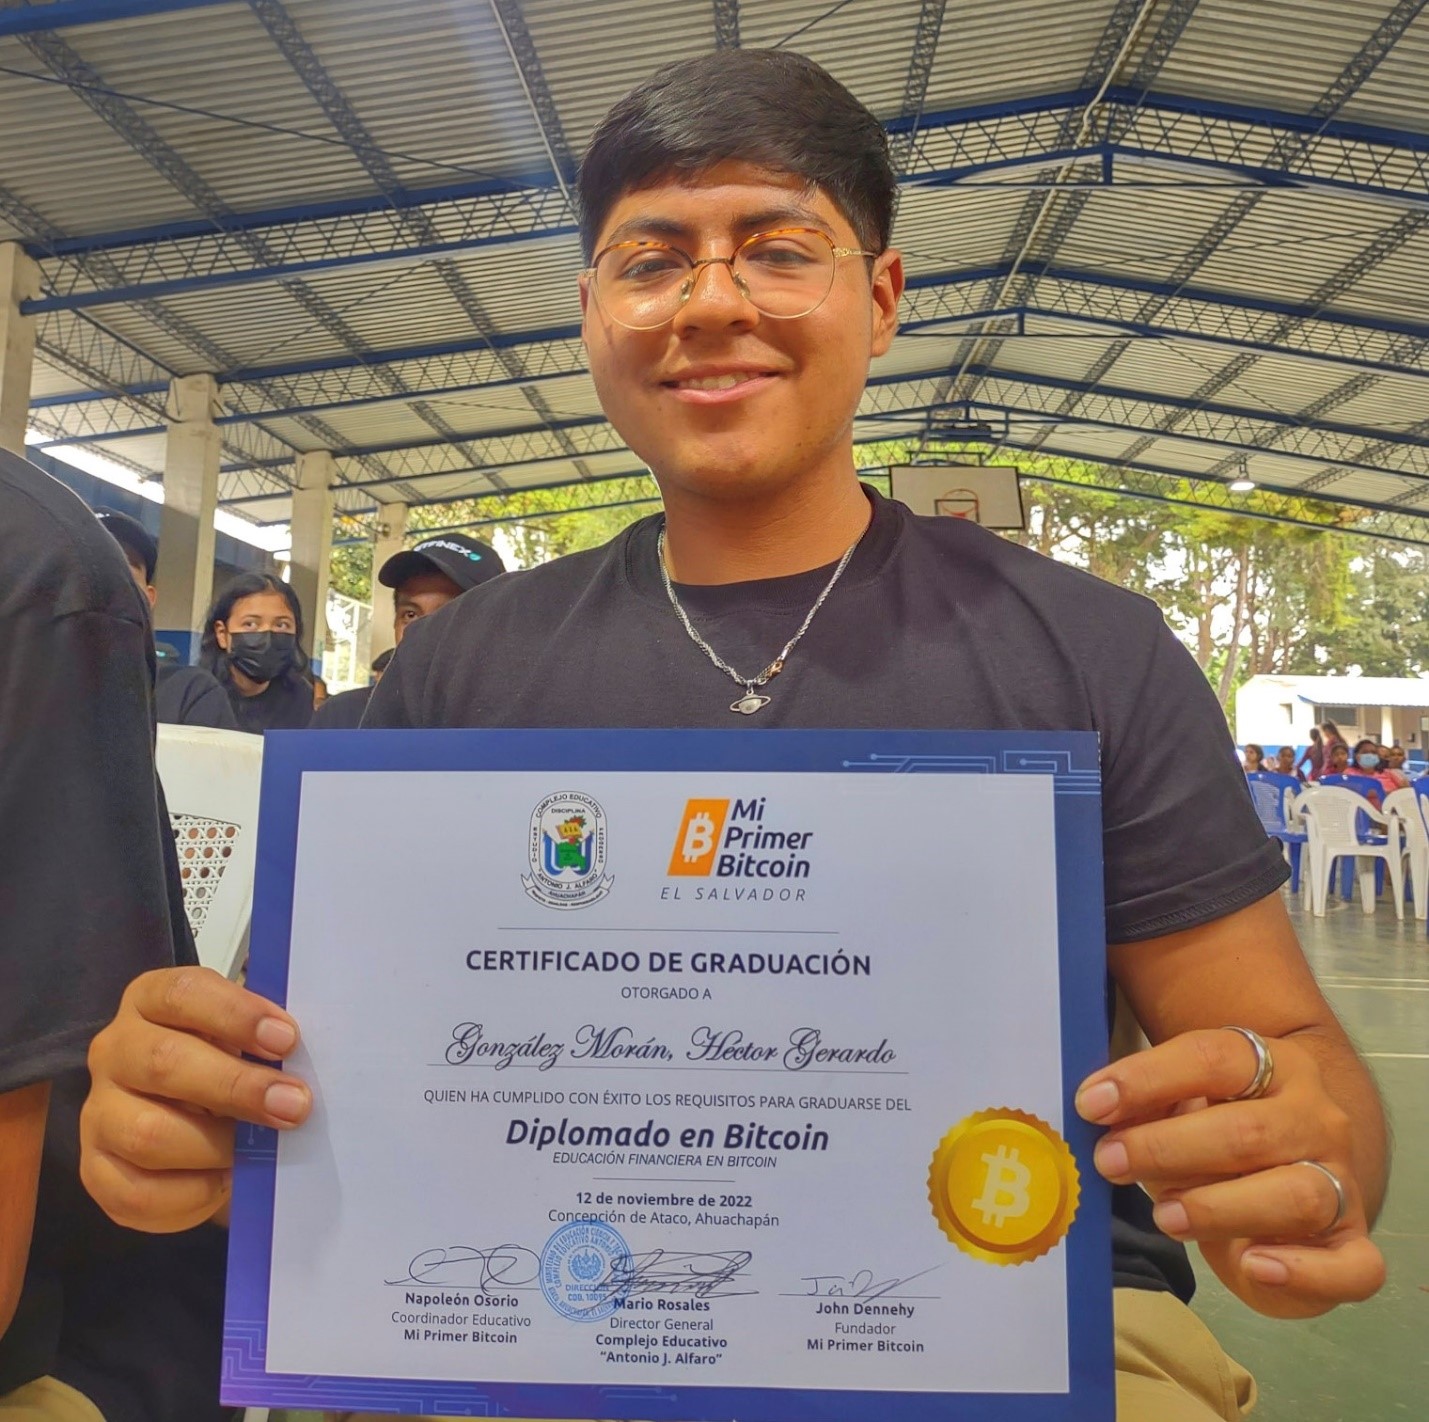 نوجوان ۱۸ ساله السالوادوری از طریق تدریس بیت کوین به کسب درآمد می‌پردازد